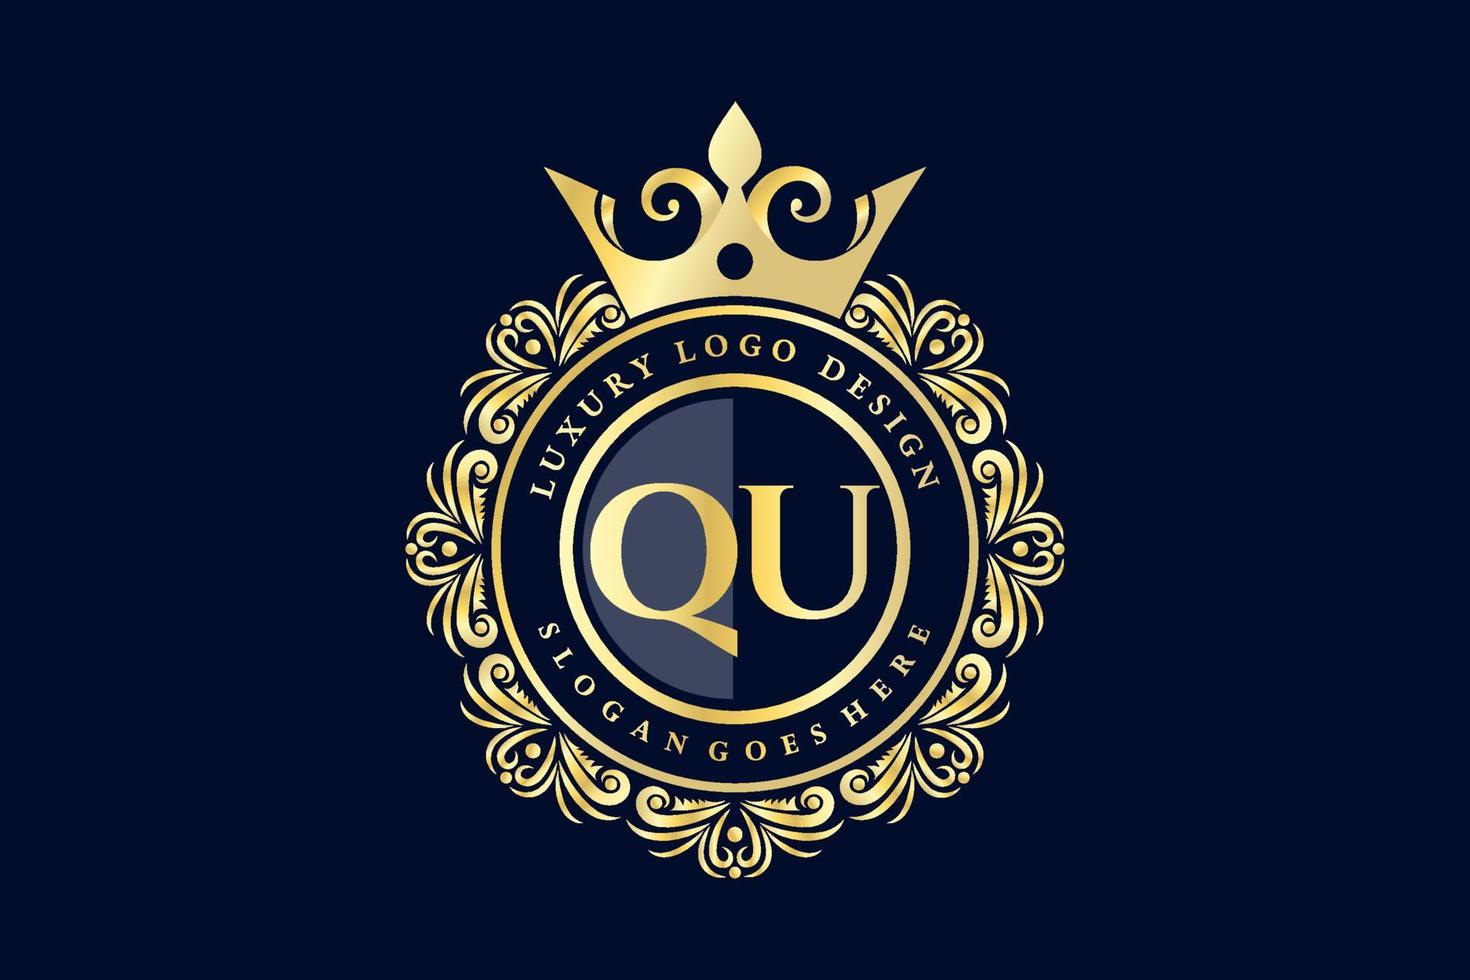 q lettre initiale or calligraphique féminin floral monogramme héraldique dessiné à la main antique vintage style luxe logo design vecteur premium